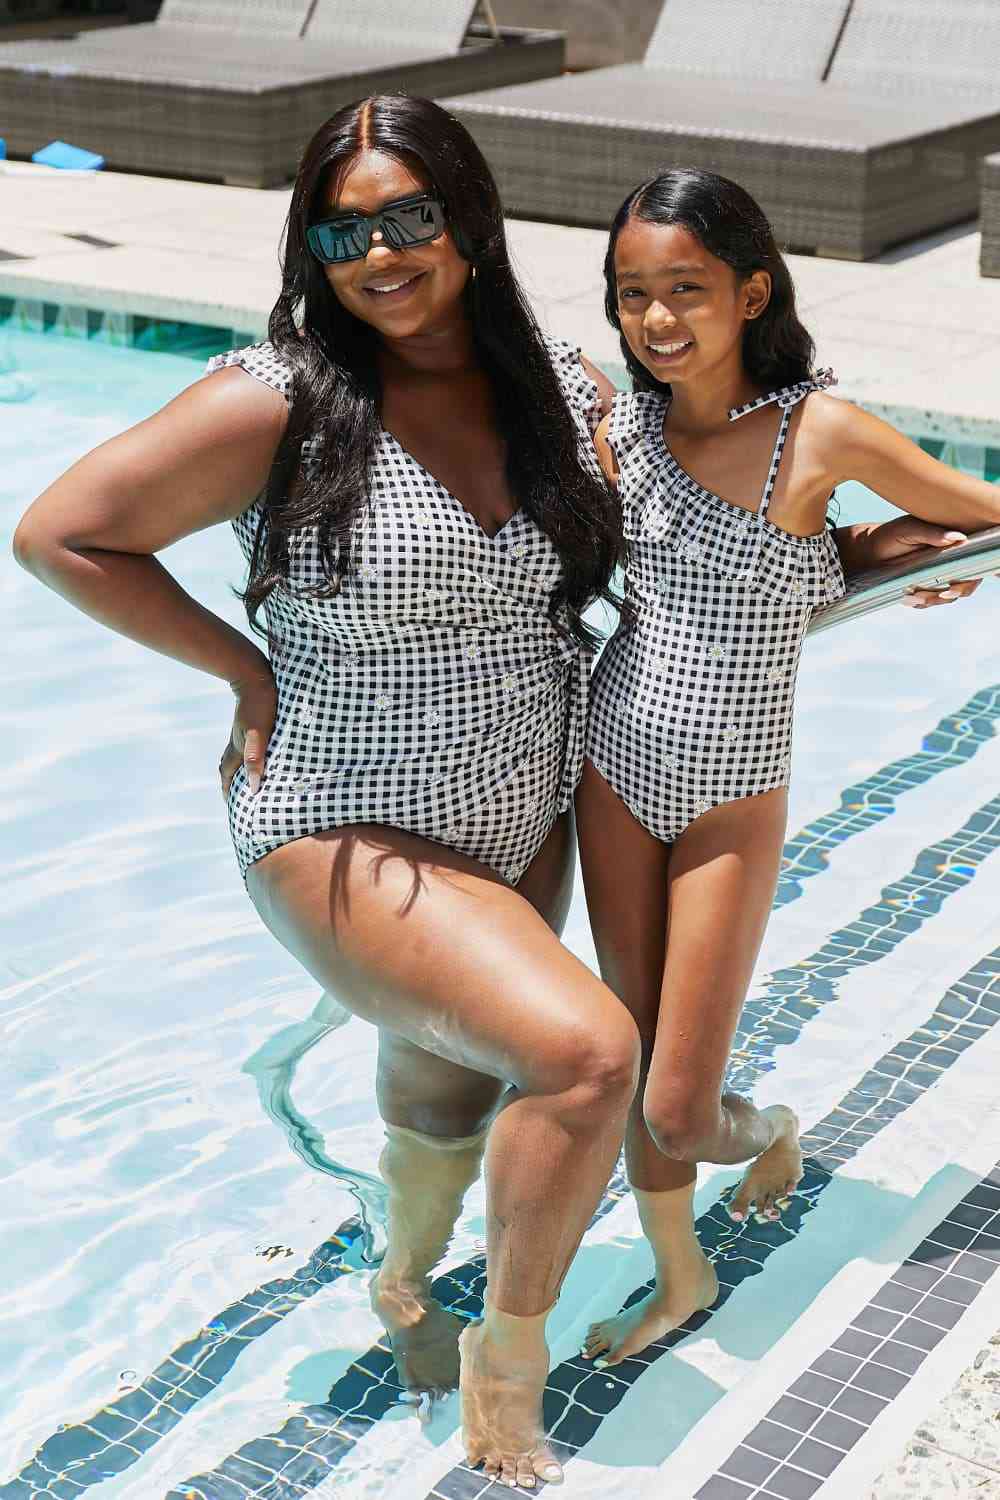 Full Size Float On Ruffle Faux Wrap Womens One-Piece Swimsuit in Black - Sydney So Sweet